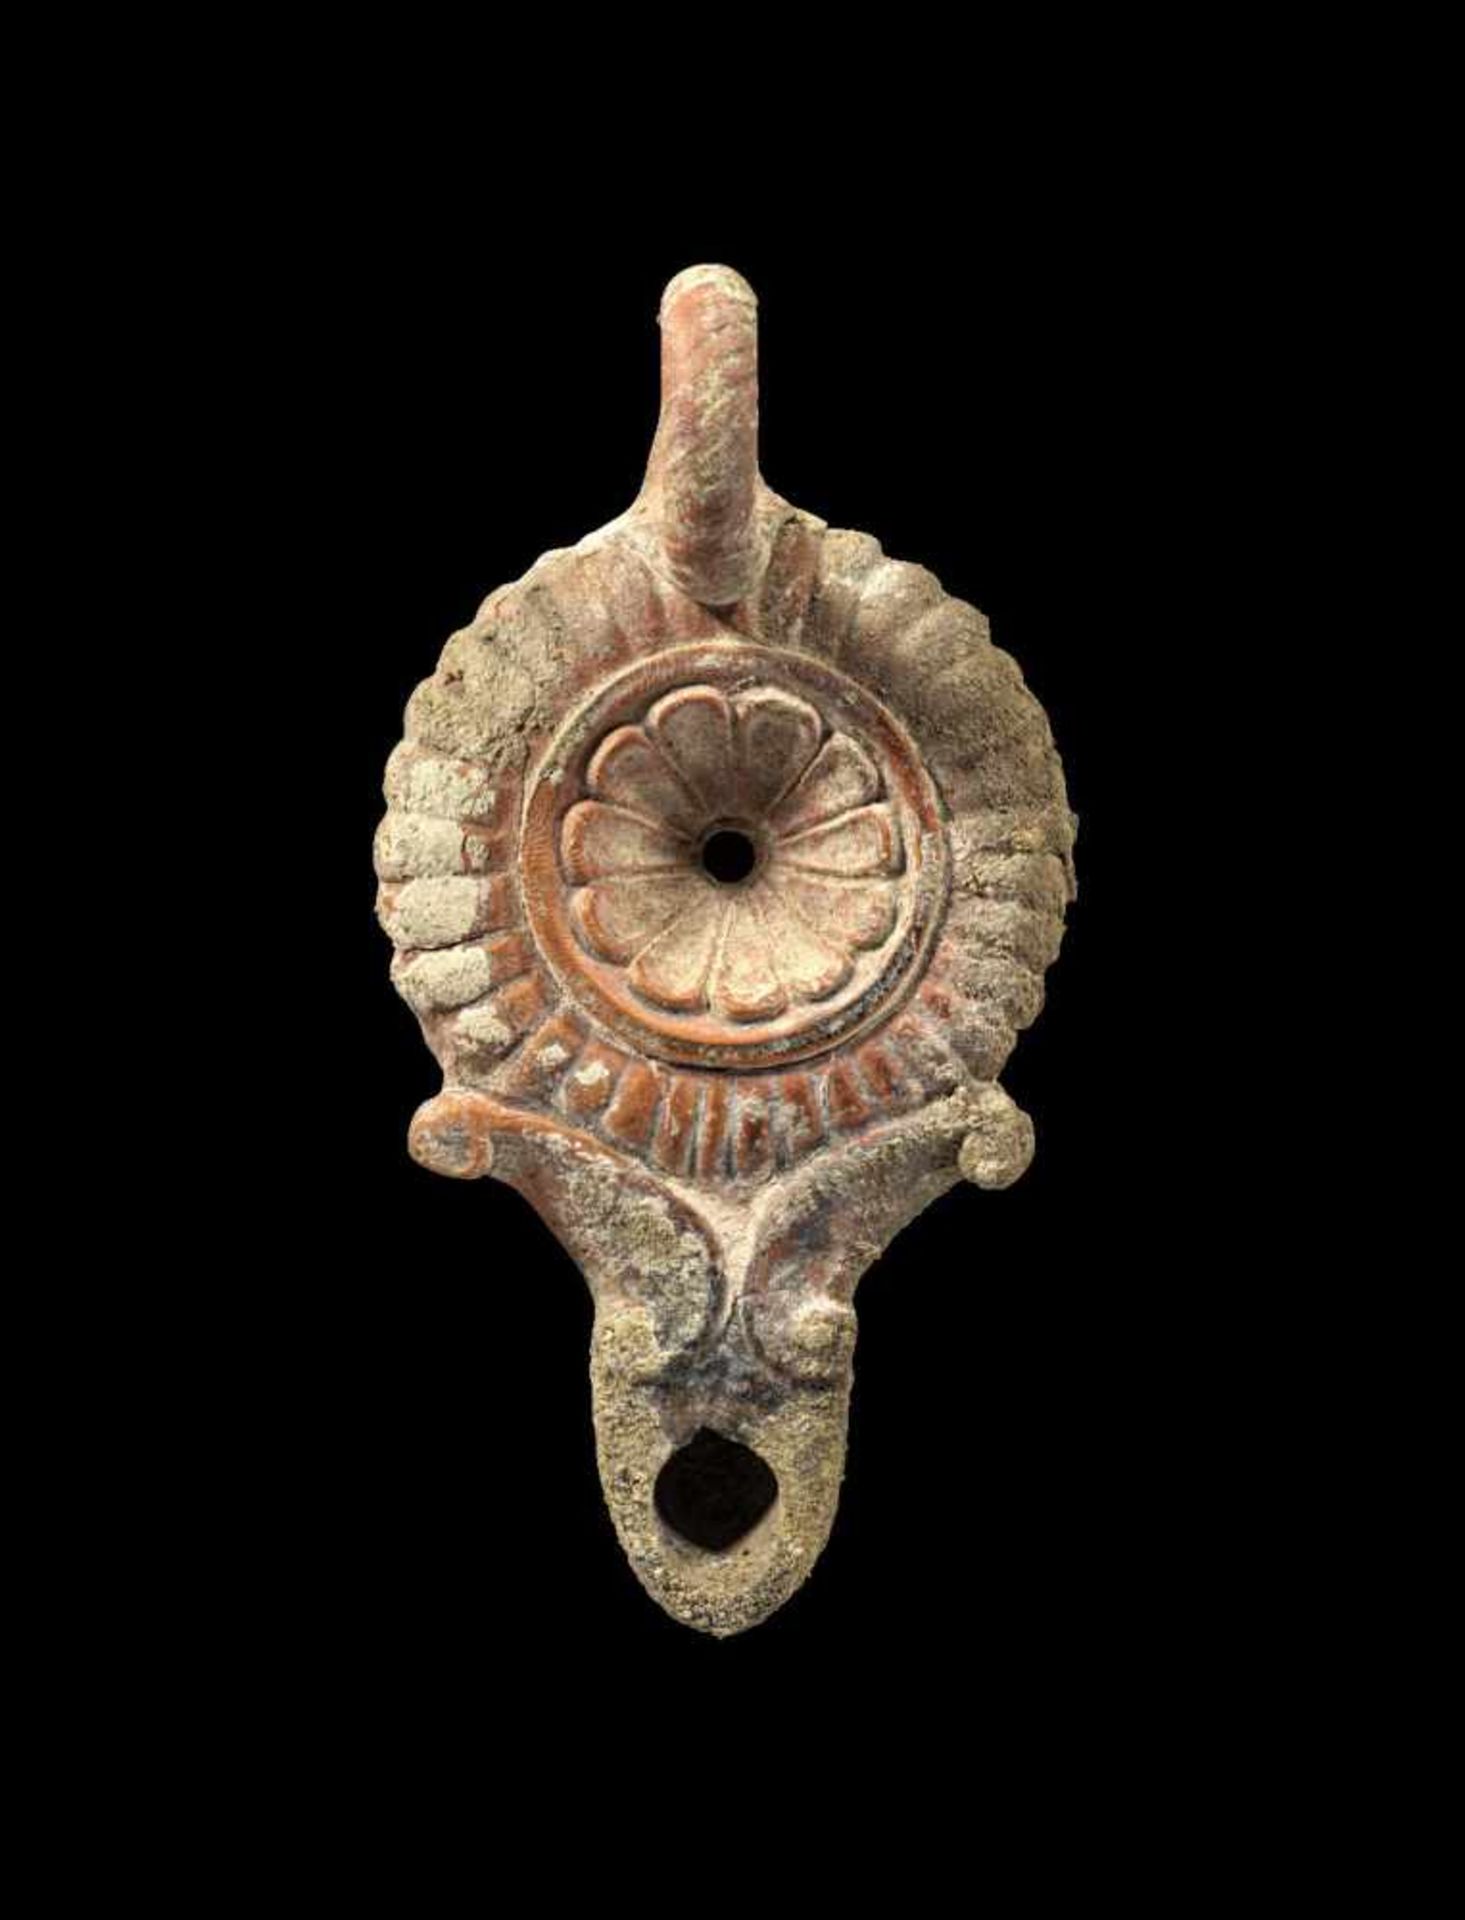 Tonlampe mit Rippendekor. Römisch, ca. 1. Jh. n. Chr. L 12,4cm, H (mit Henkel) 5cm. Typ Loeschcke IV